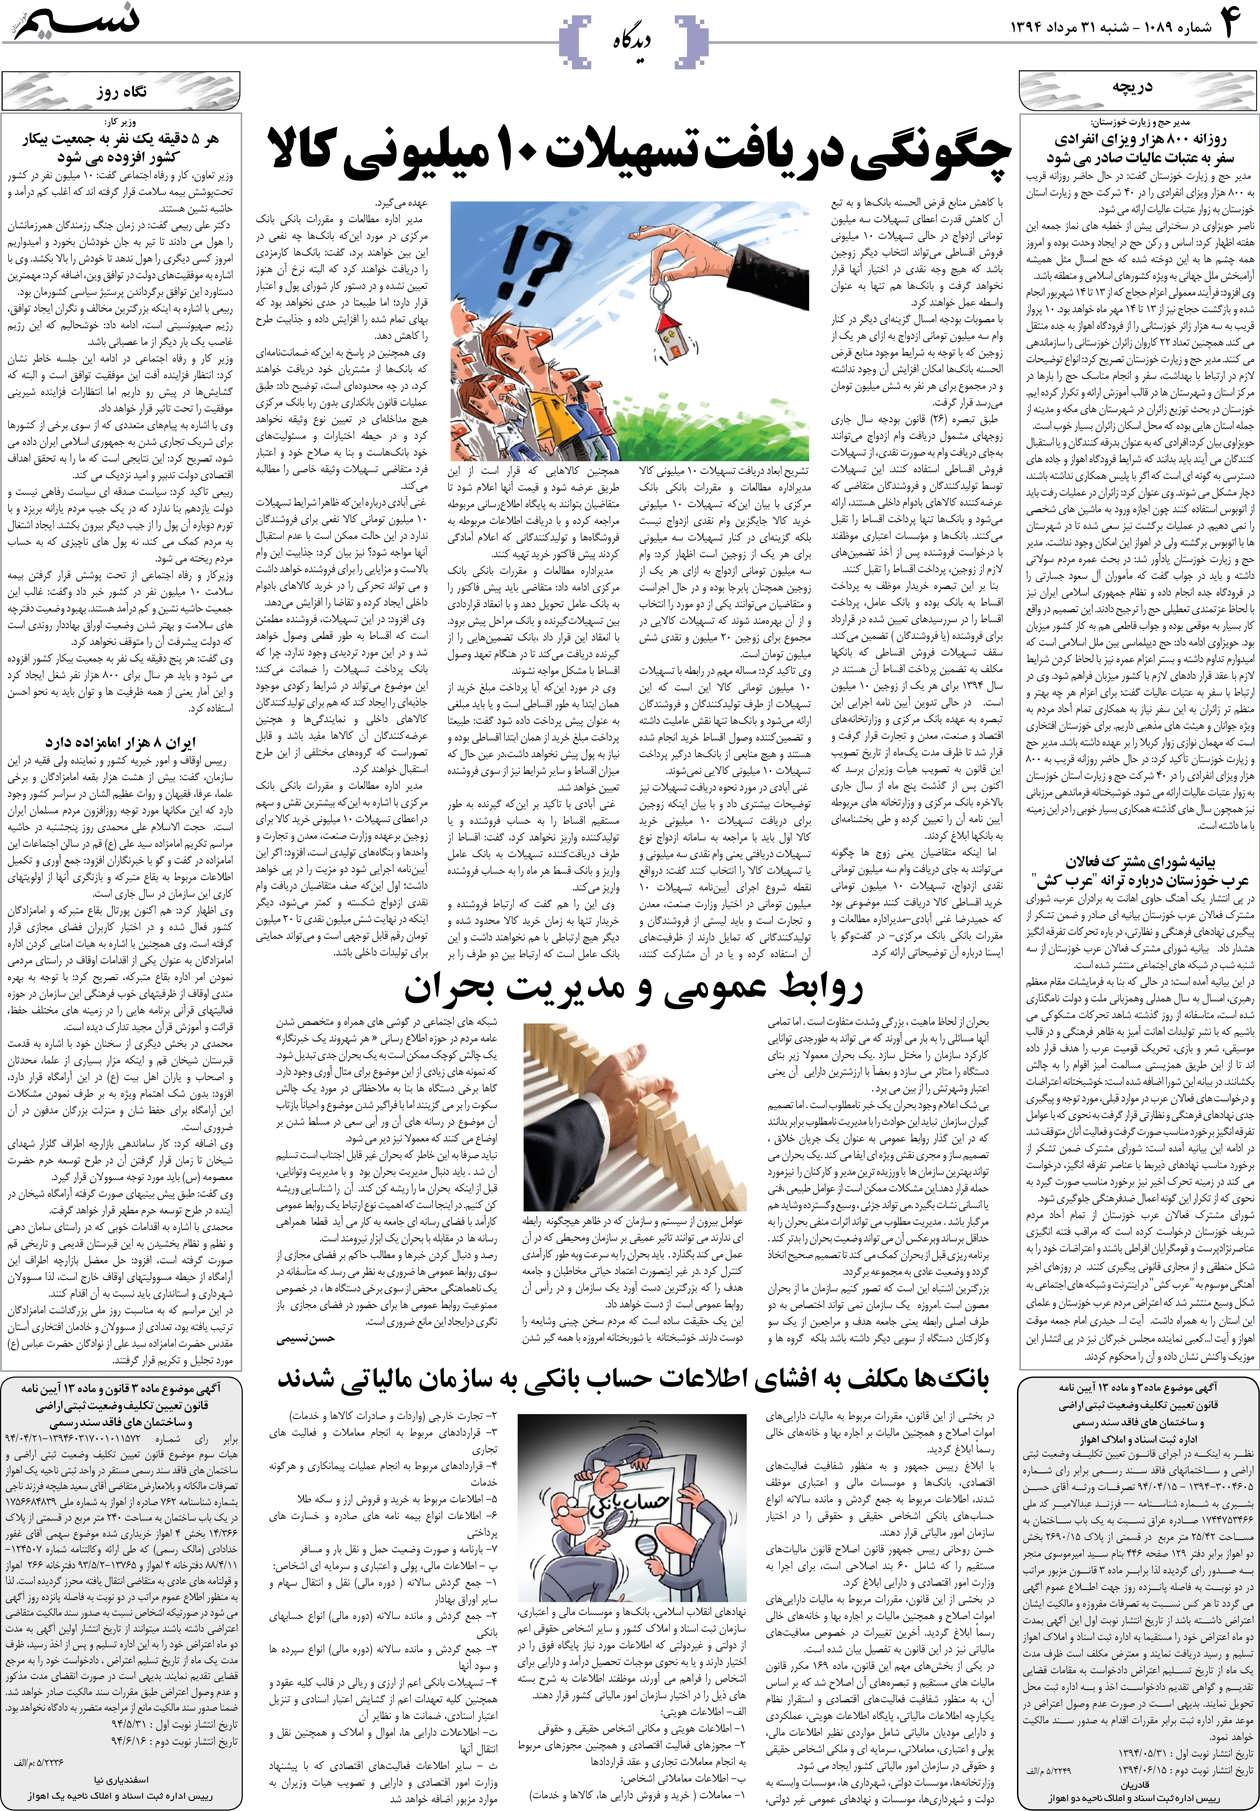 صفحه دیدگاه روزنامه نسیم شماره 1089